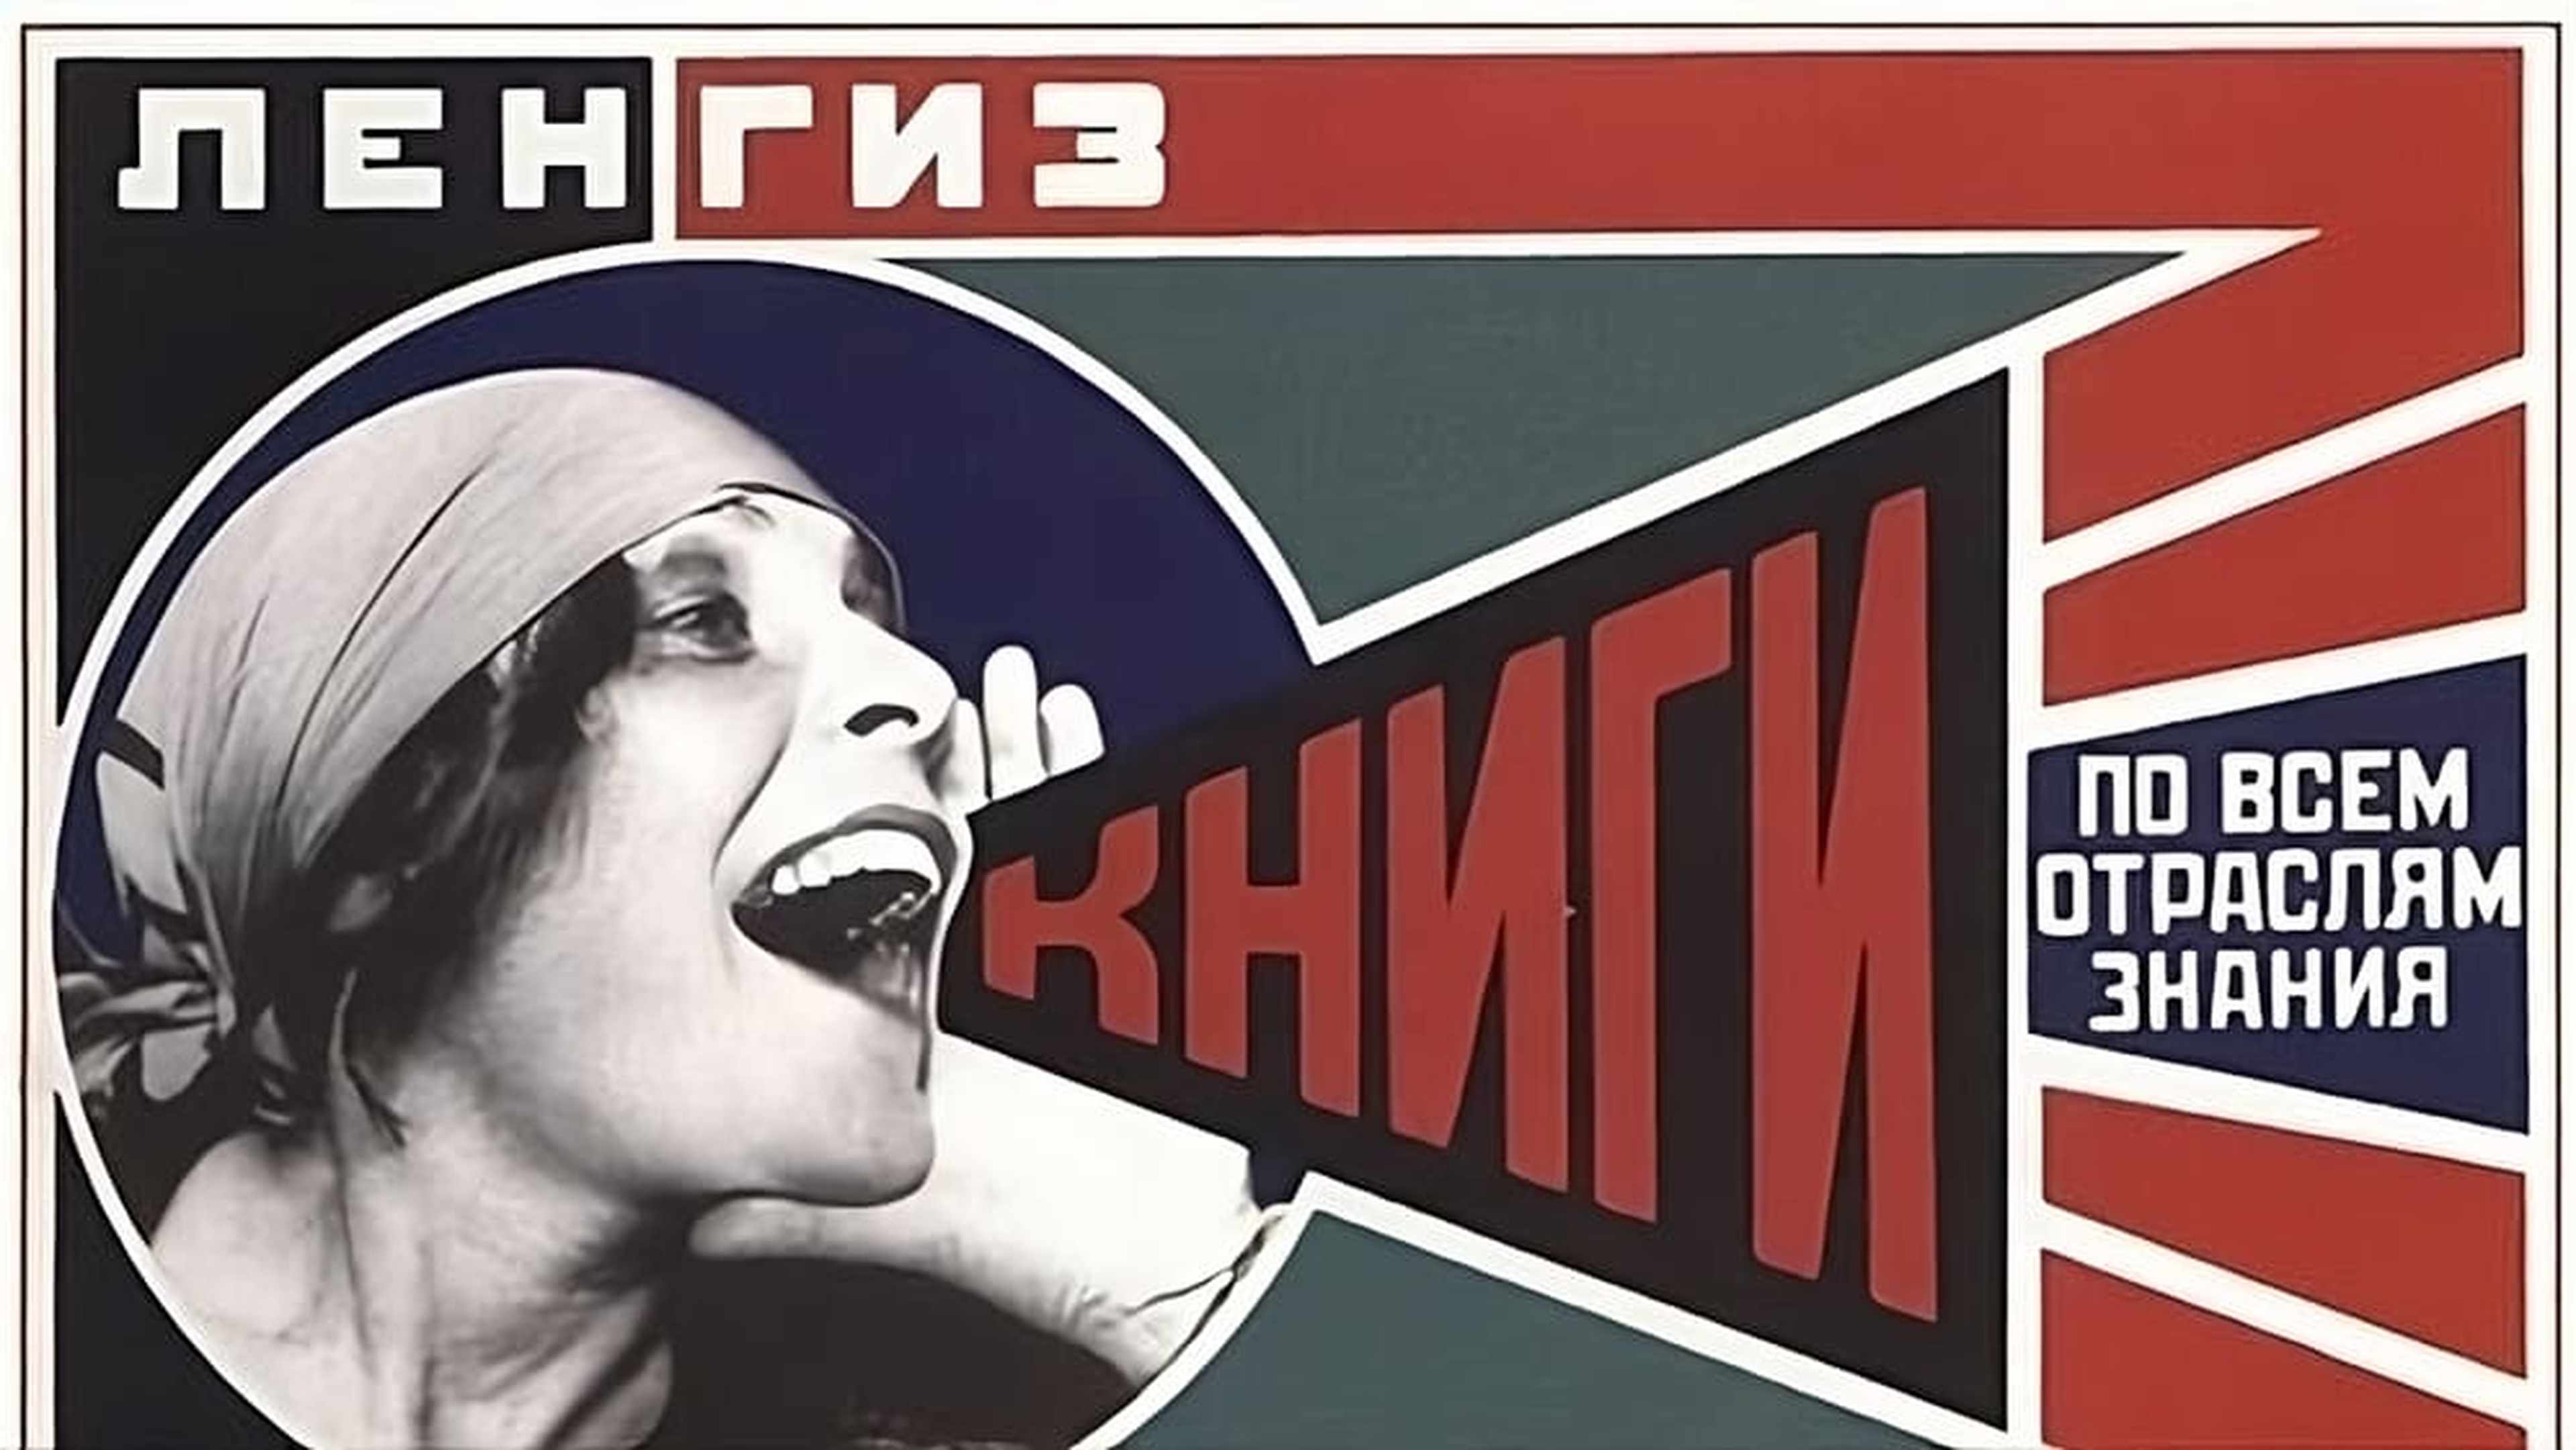 Affiche de propagande soviétique pour promouvoir la lecture